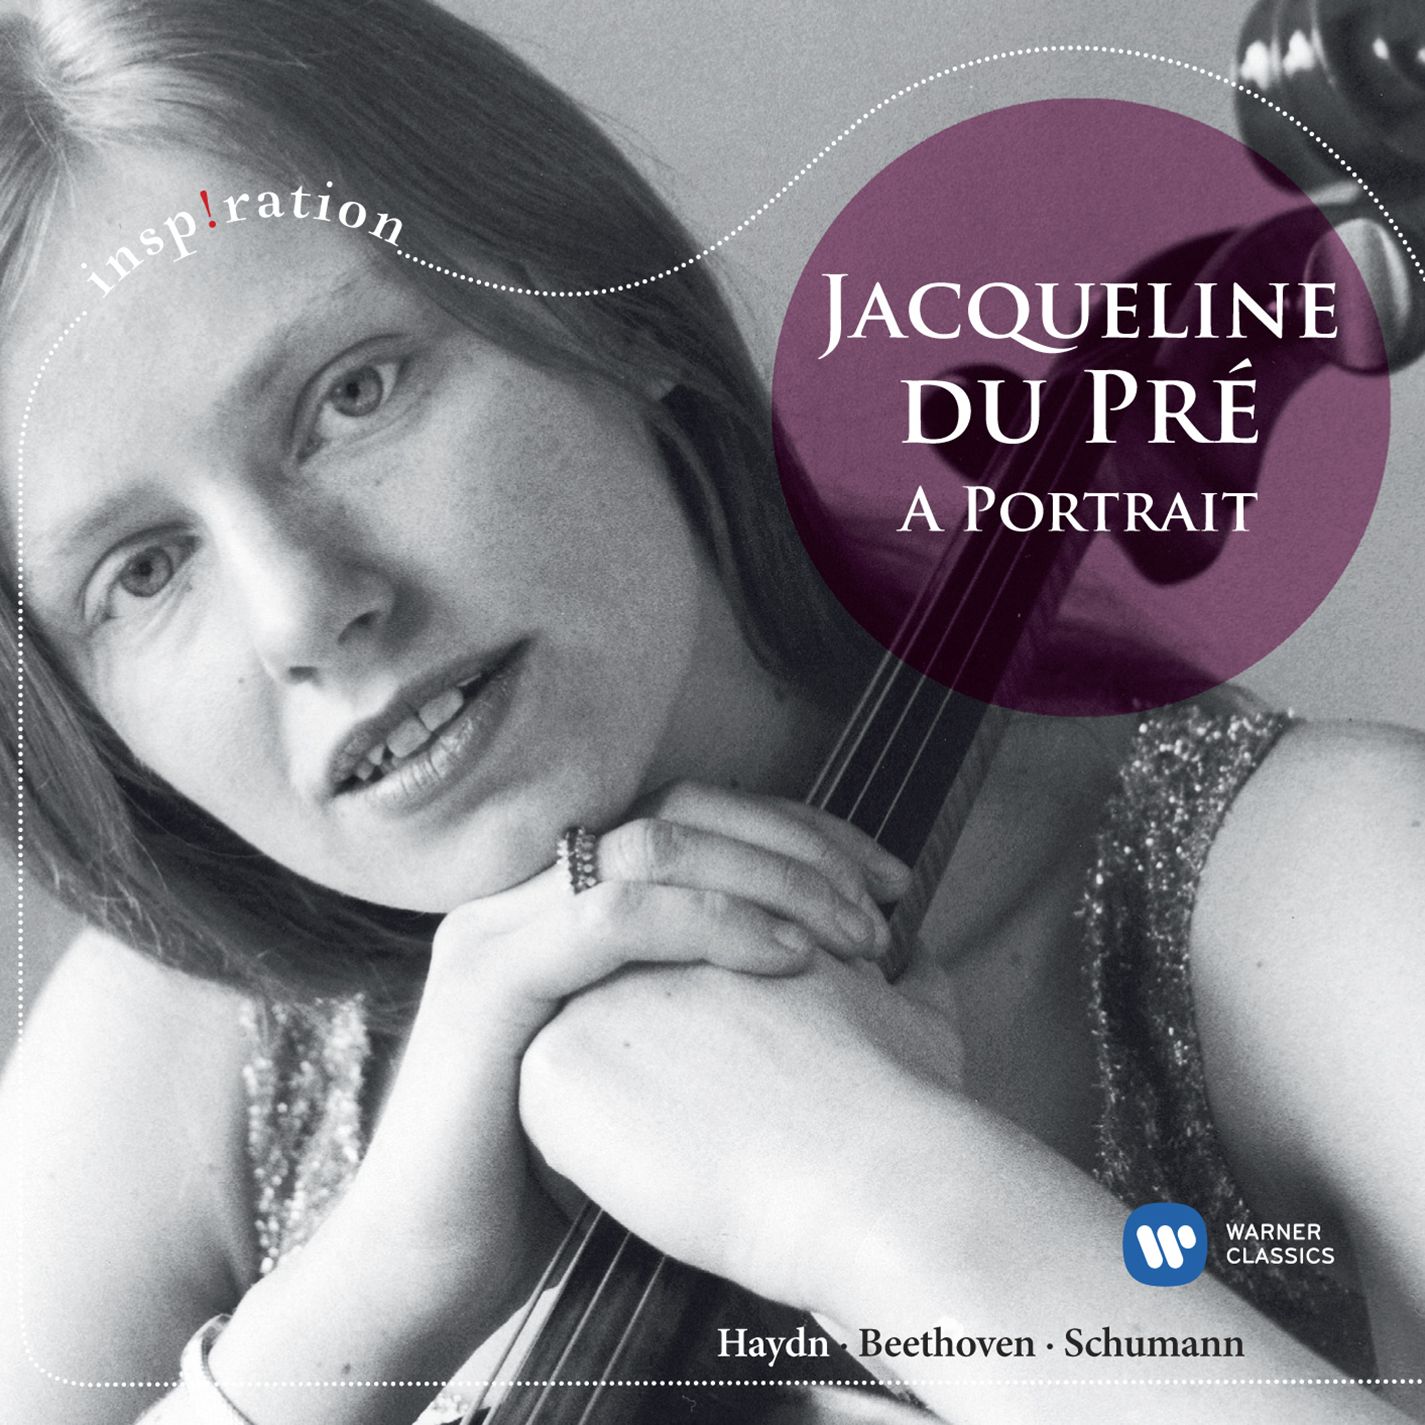 Jacqueline du Pre: A Portrait